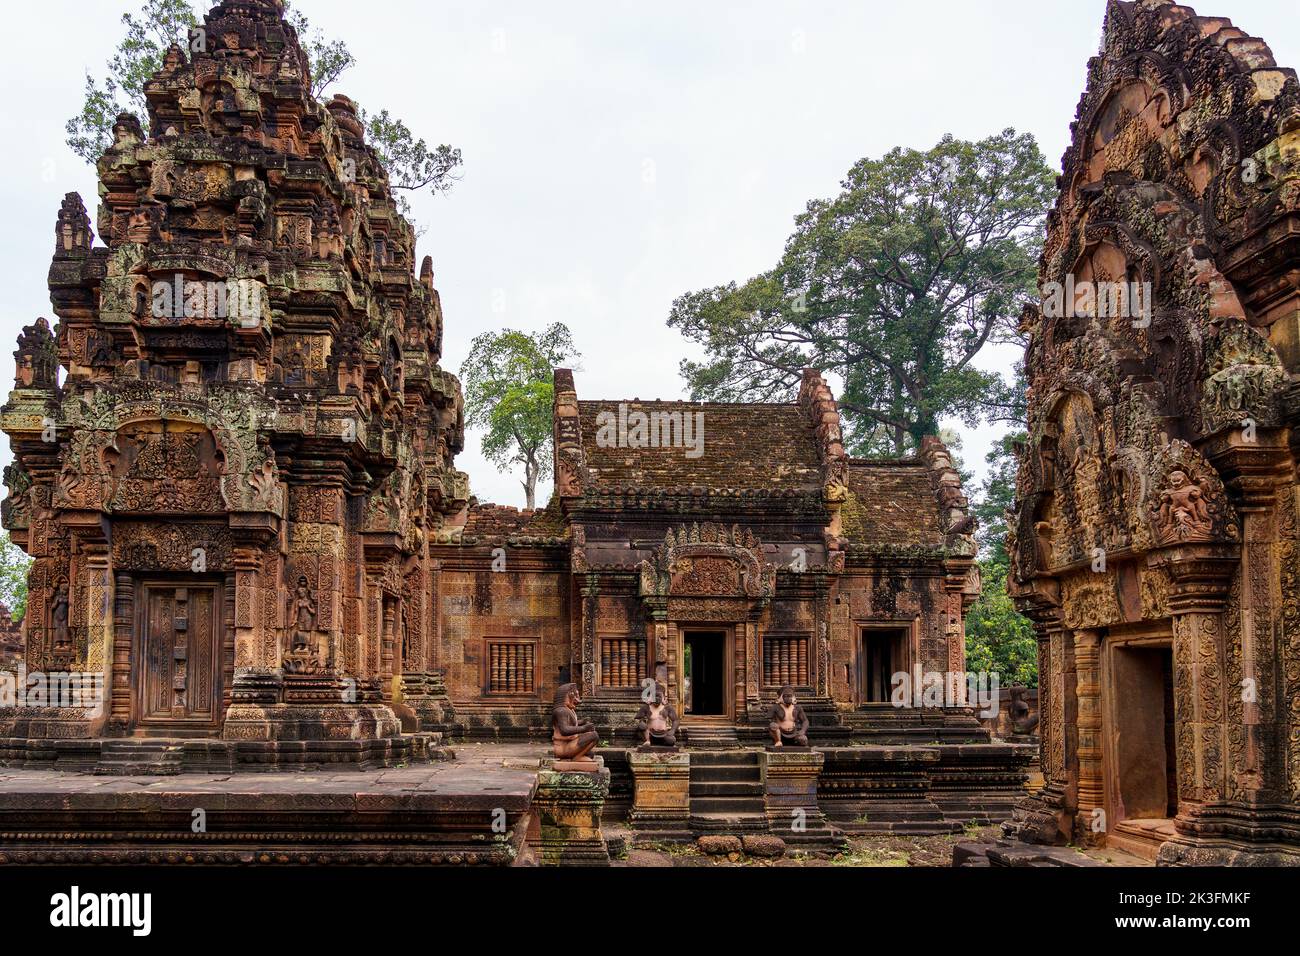 Camboya. Provincia de Siem Reap. El parque arqueológico de Angkor. Banteay Srei. Templo hindú del siglo 10th dedicado a Shiva Foto de stock